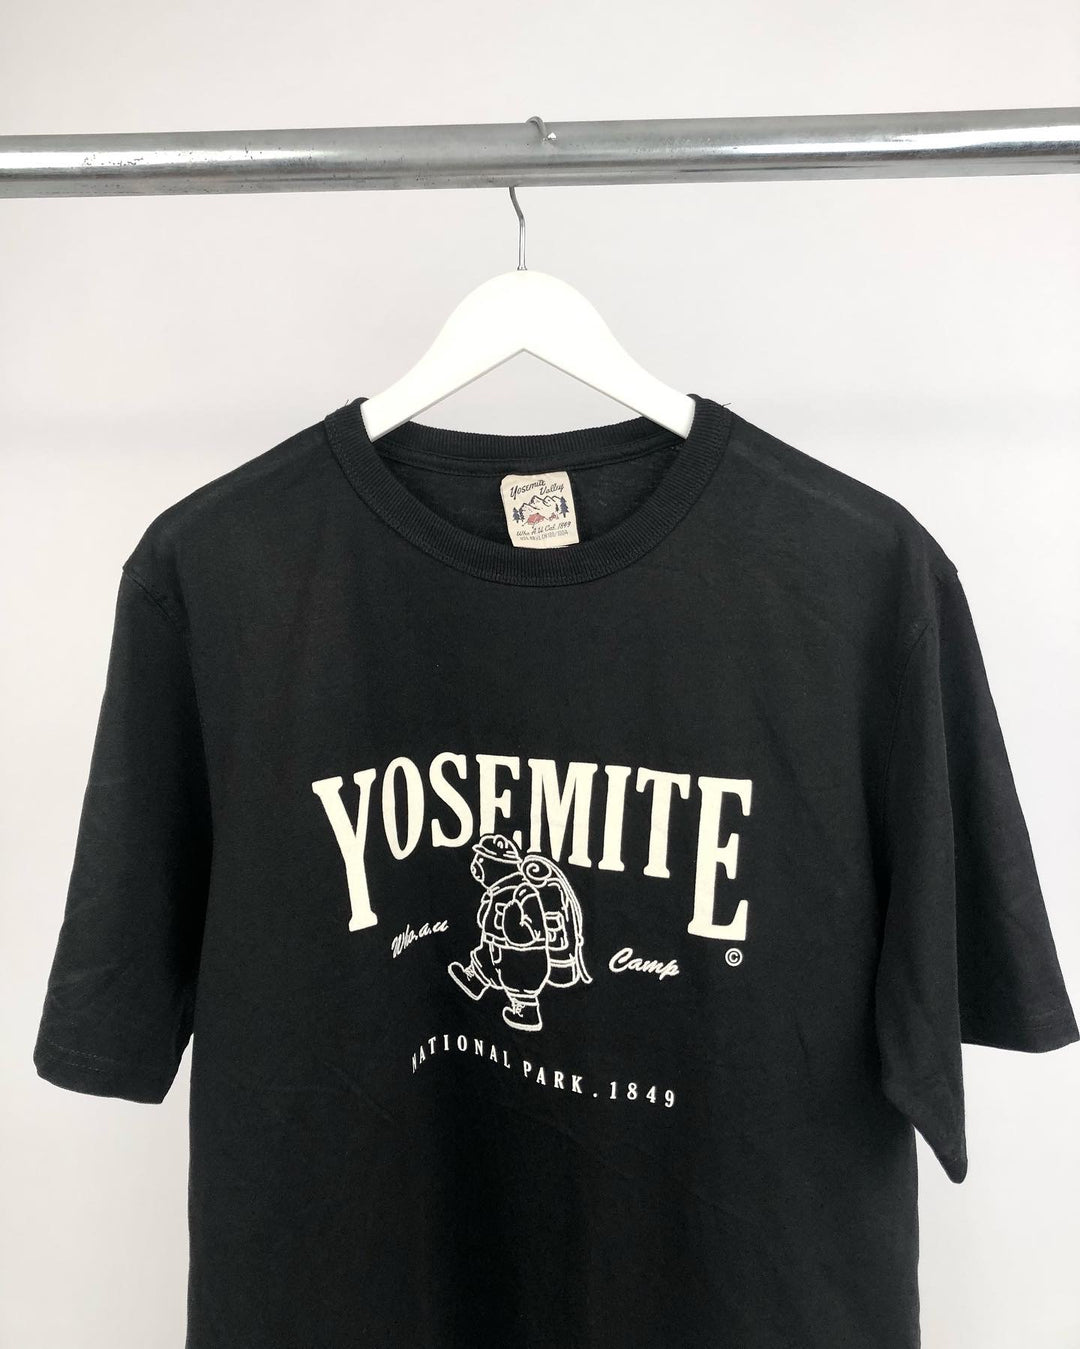 Yosemite print T-shirt in black